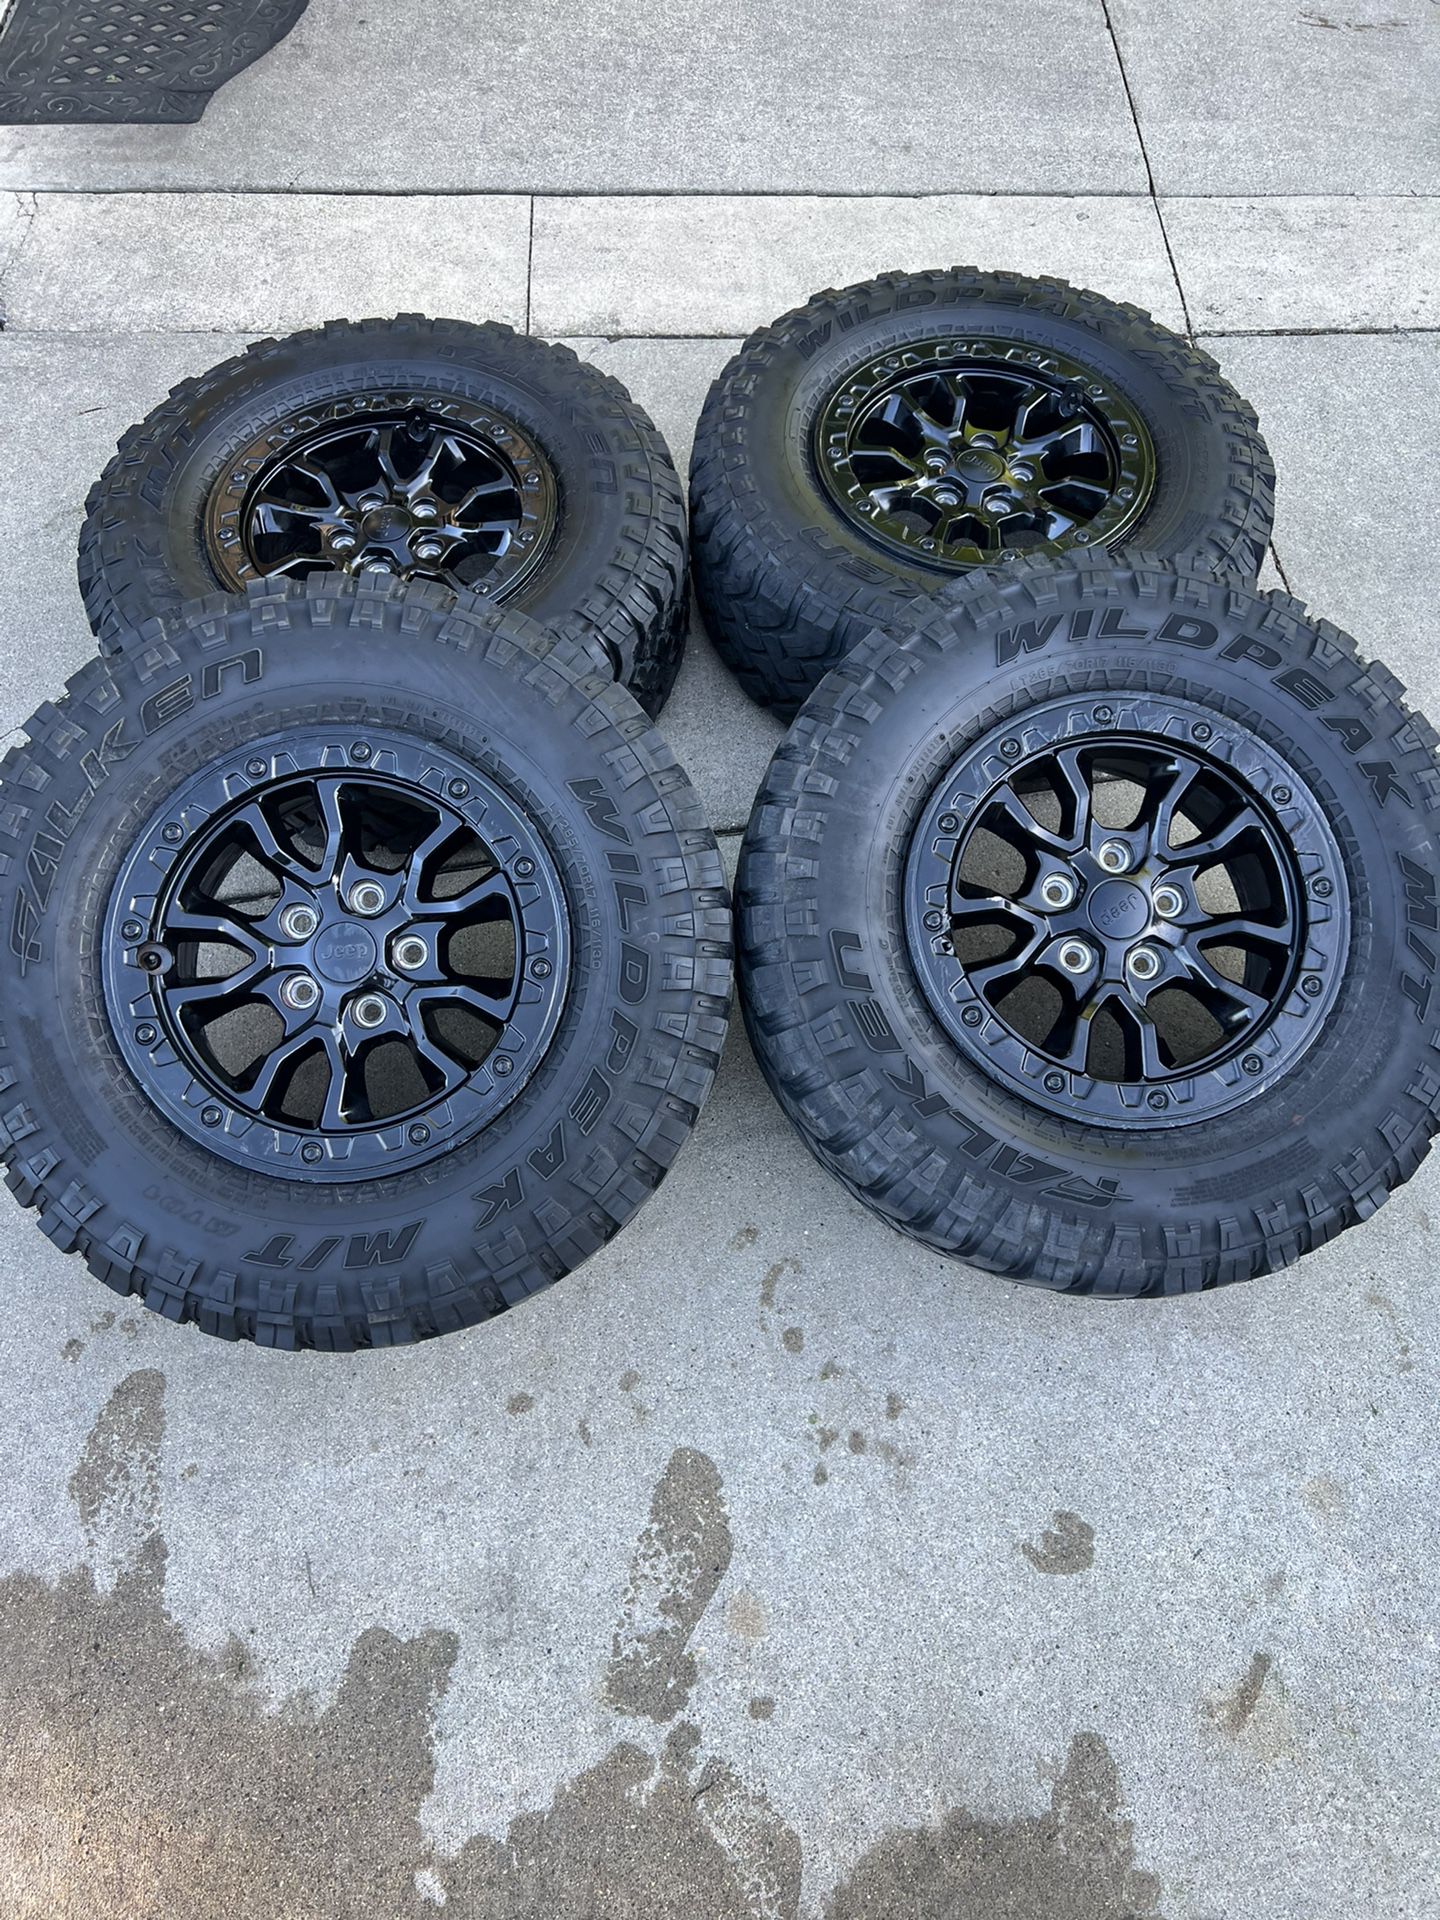 Wrangler 392 wheels/tires